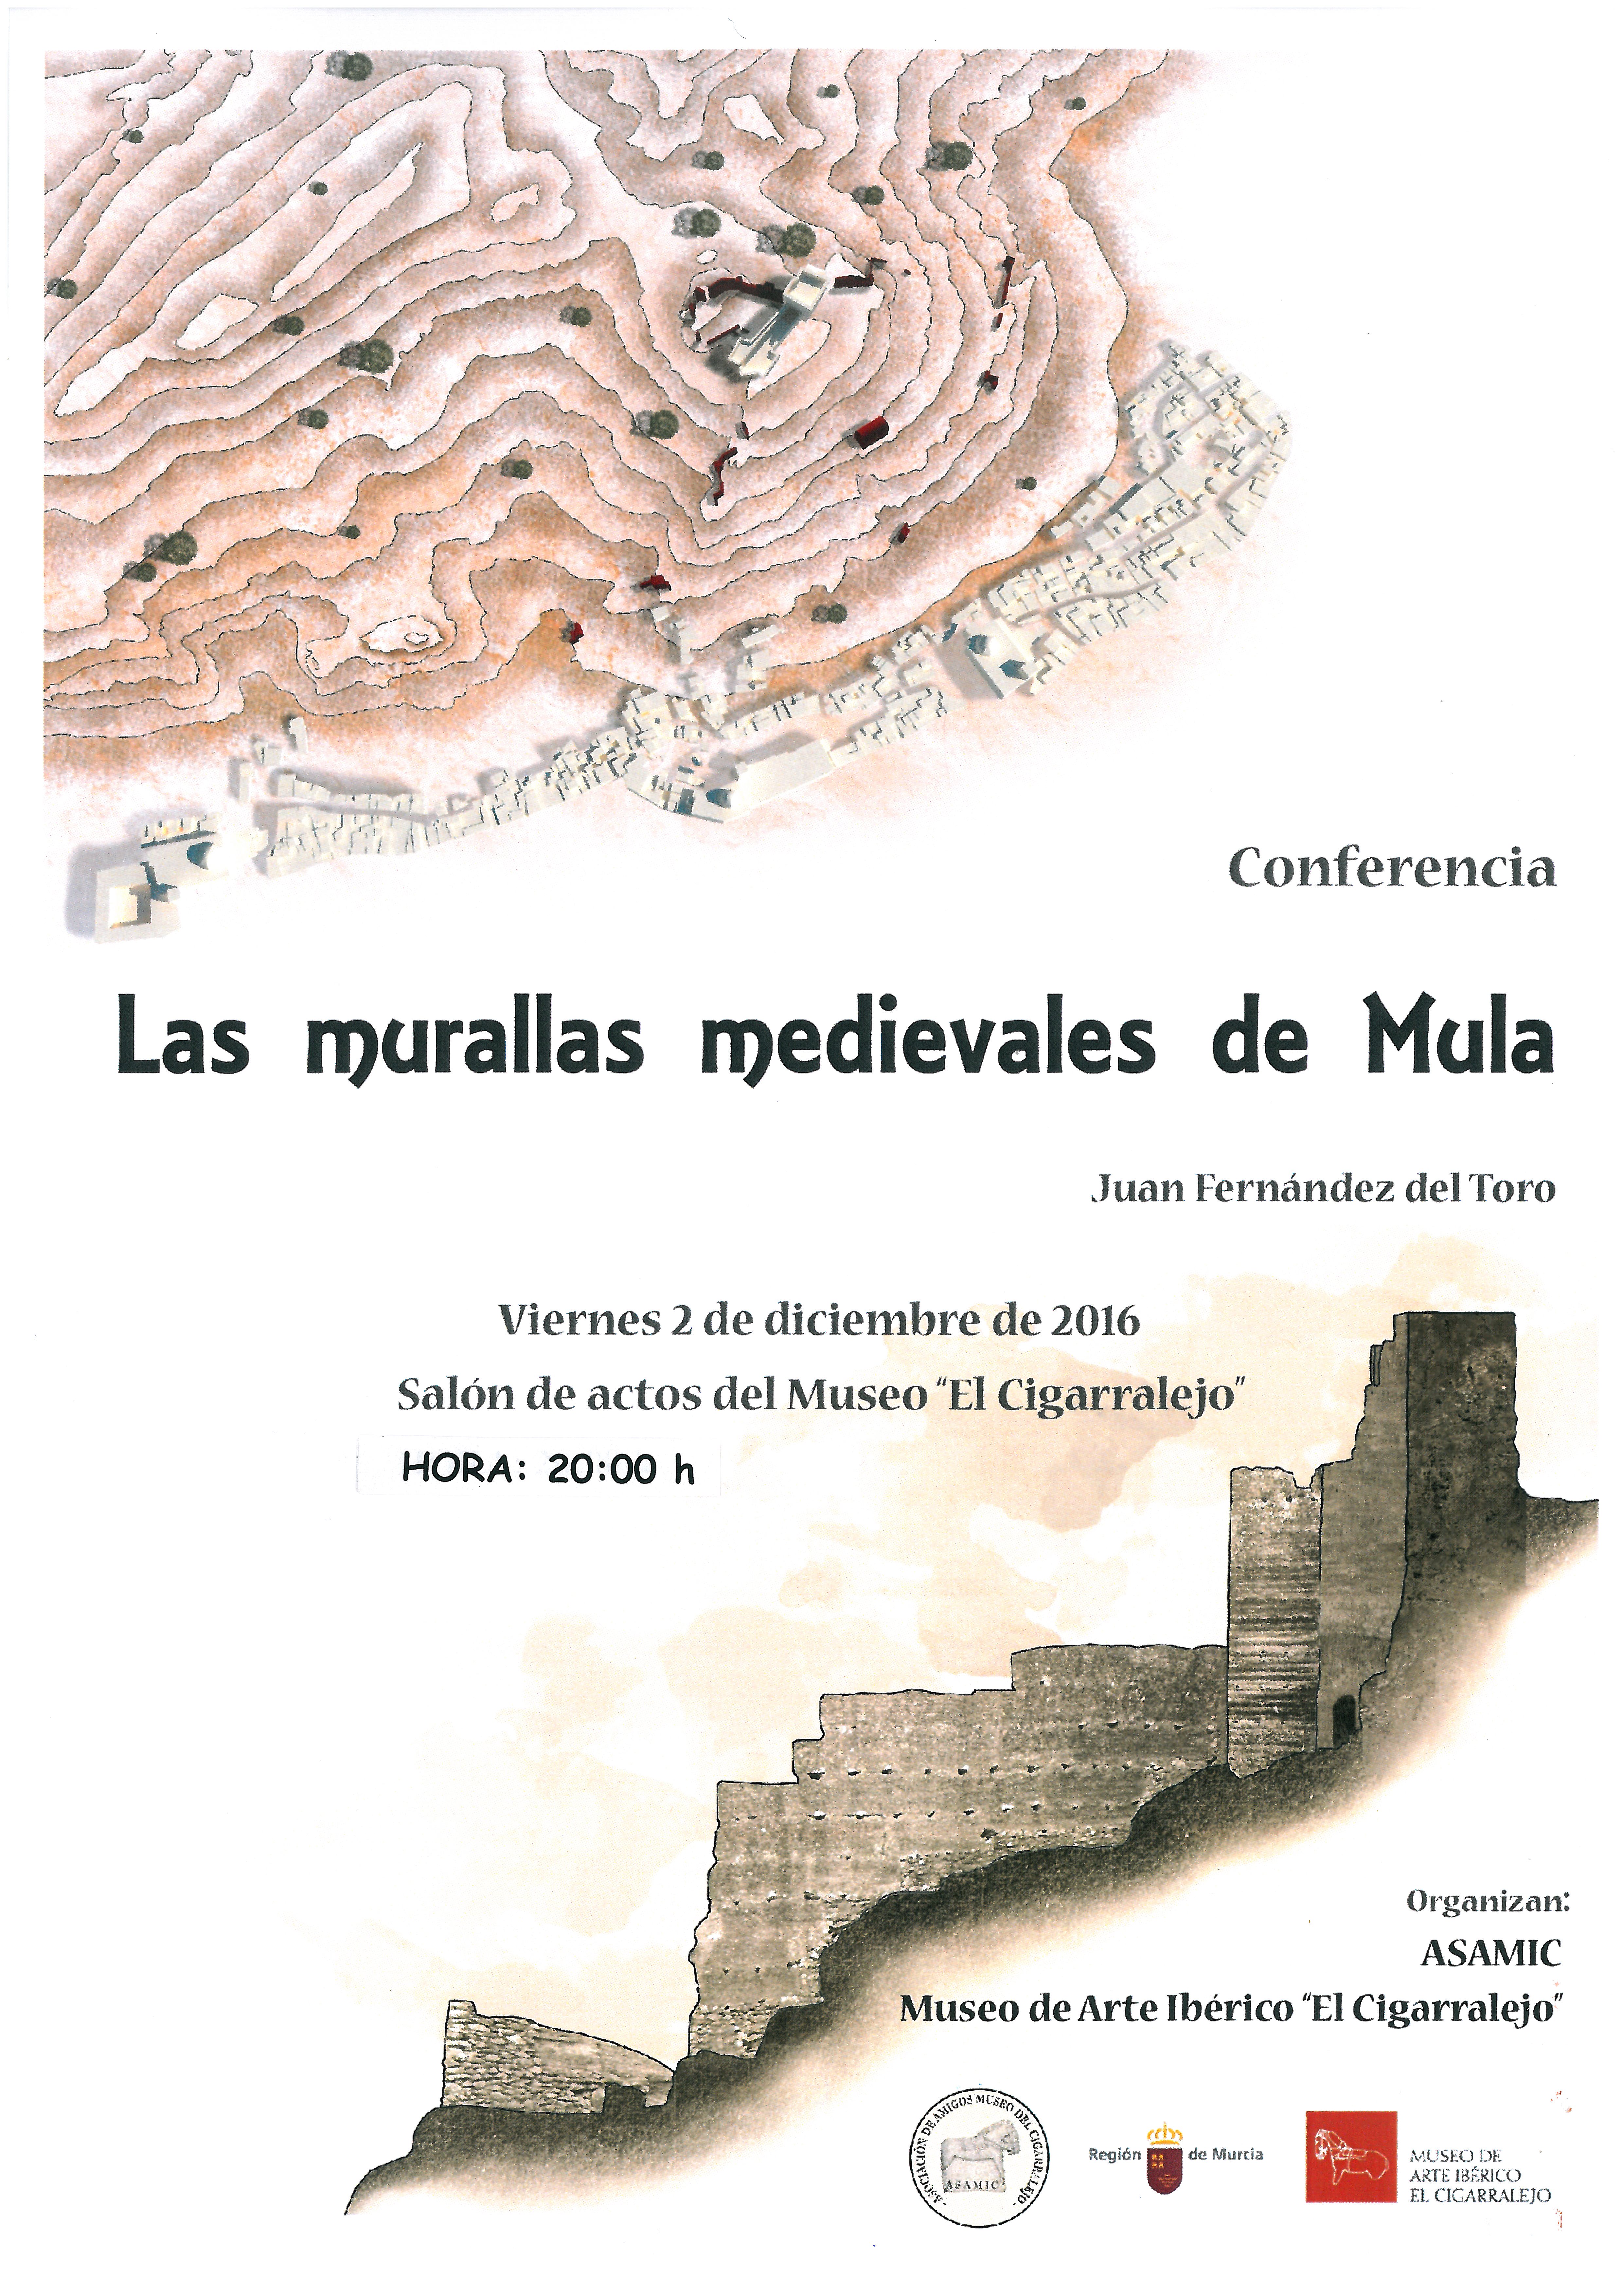 charla murallas medievales asamic 2 diciembre 2016